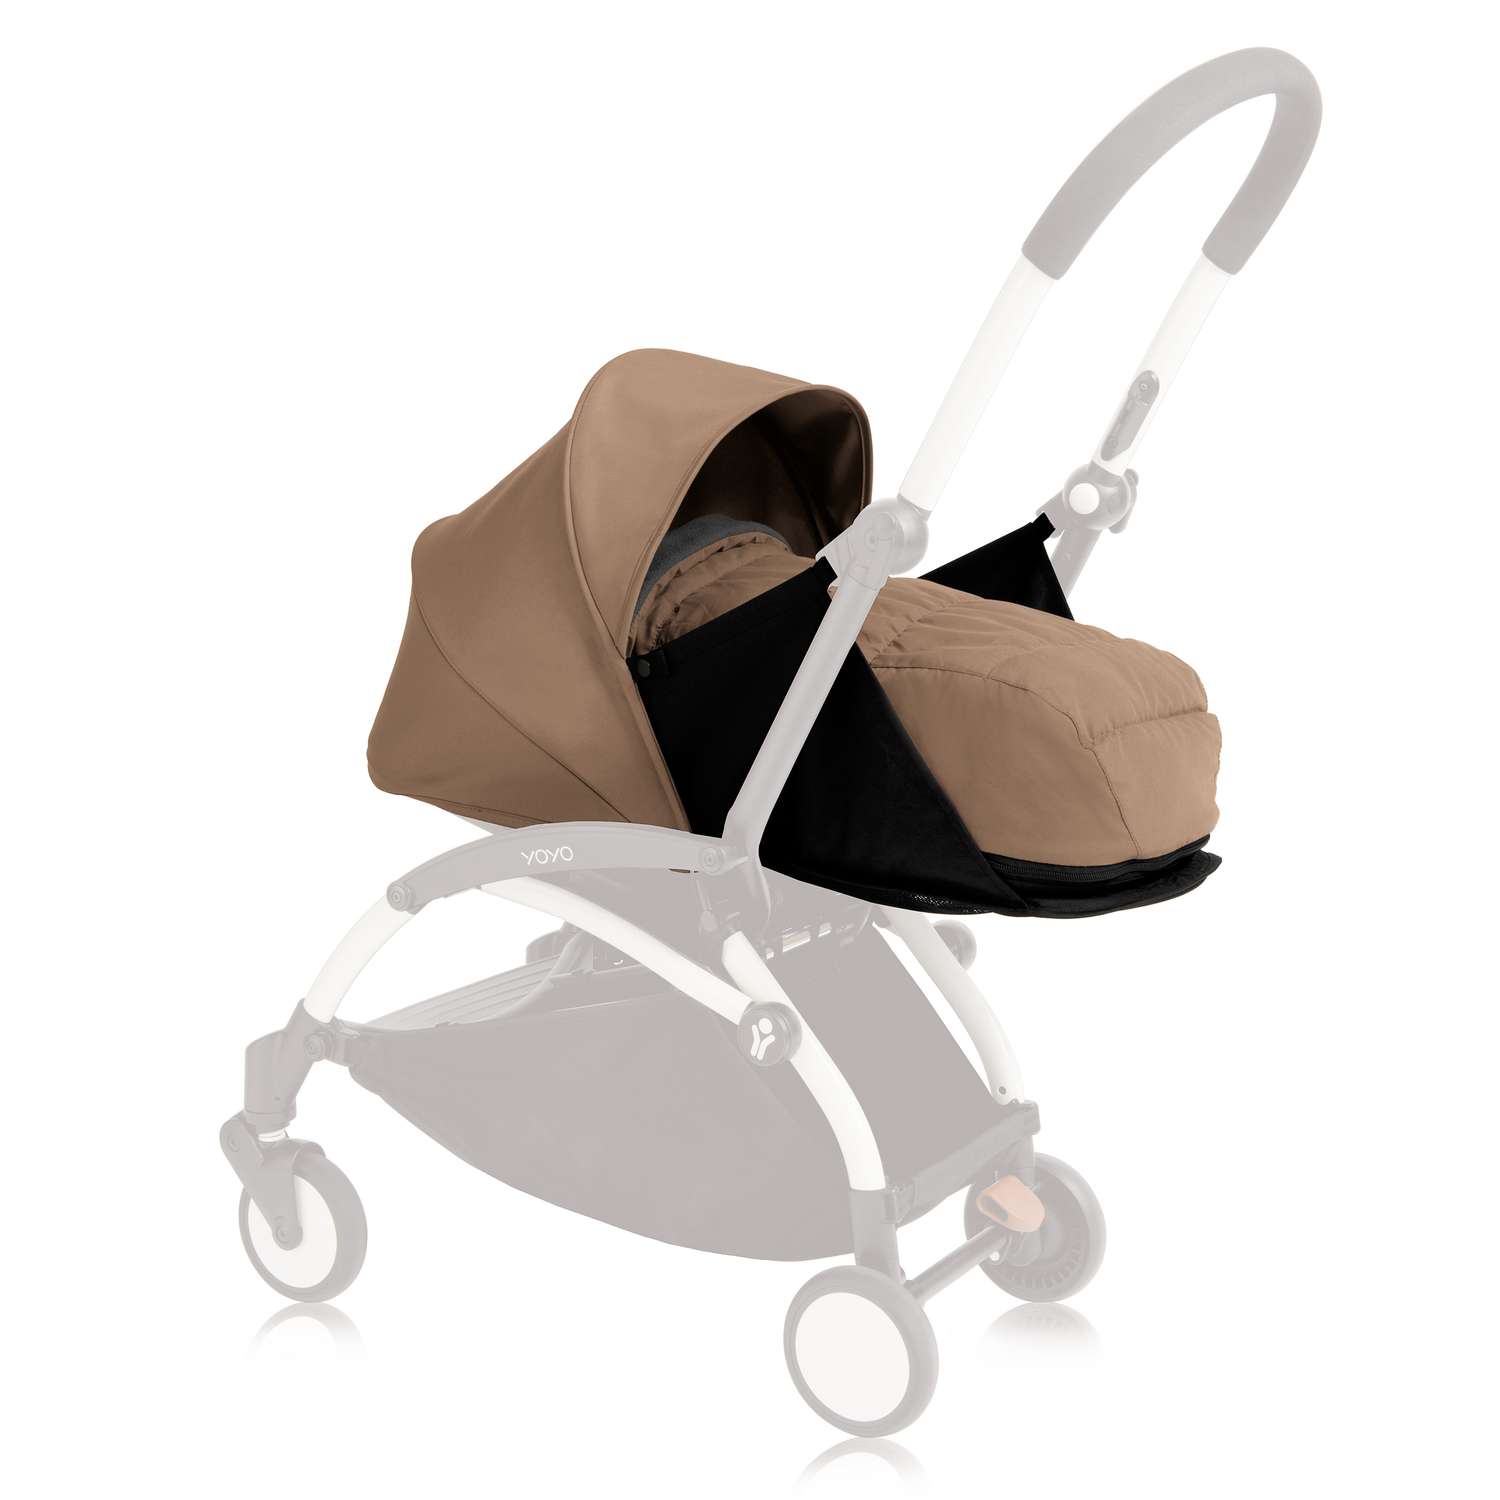 Комплект люльки для новорожденного к коляске Babyzen Yoyo Plus Кротовый BZ10105-06 - фото 1